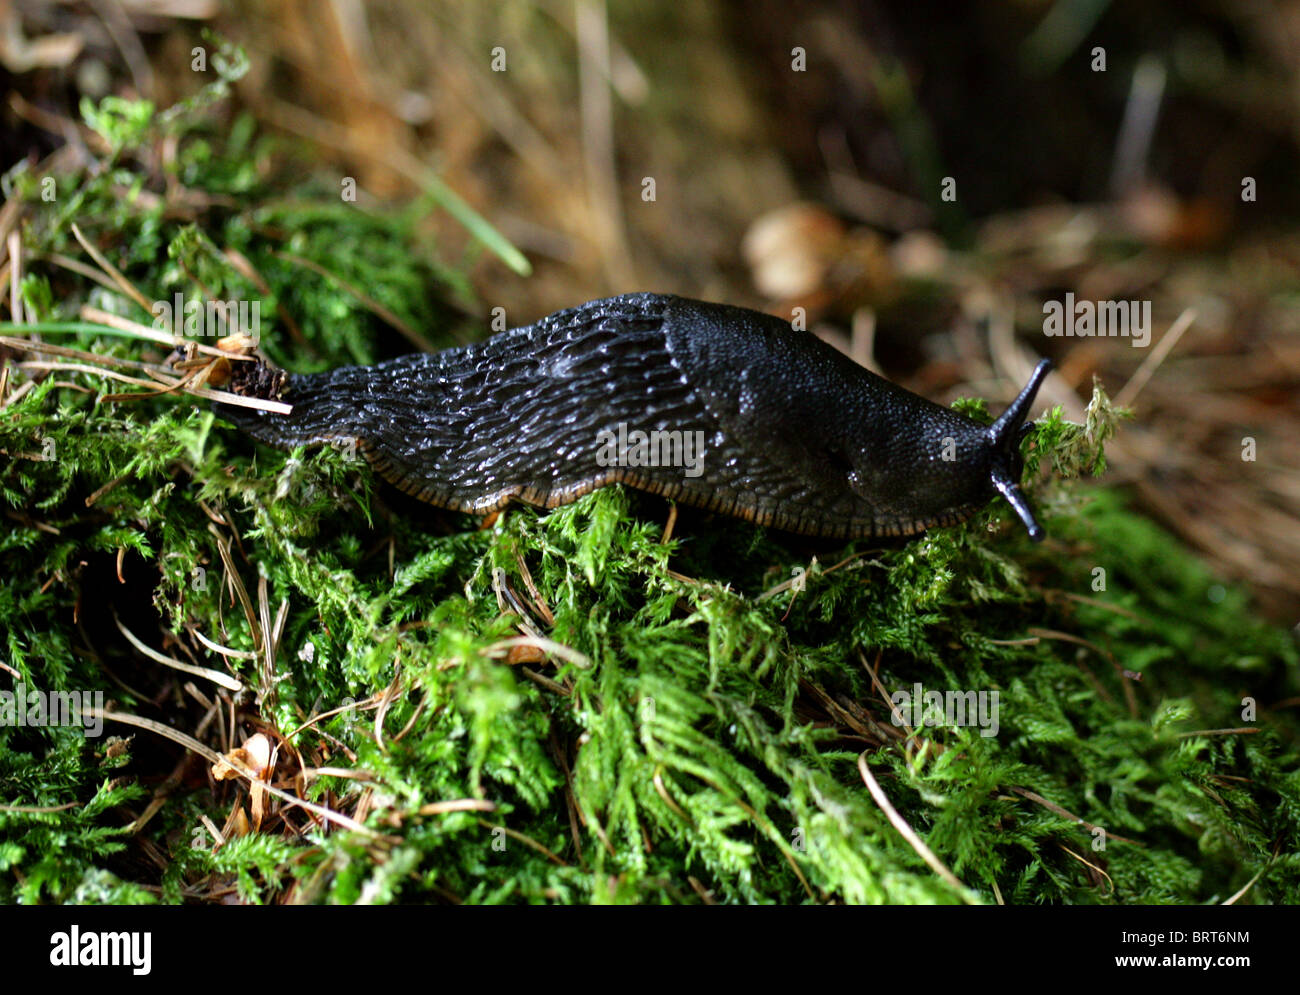 Schwarze Schnecke, Black Arion, Europäische schwarz Slug oder große schwarze Nacktschnecke, Arion Ater, Arionidae, Mollusca. Stockfoto